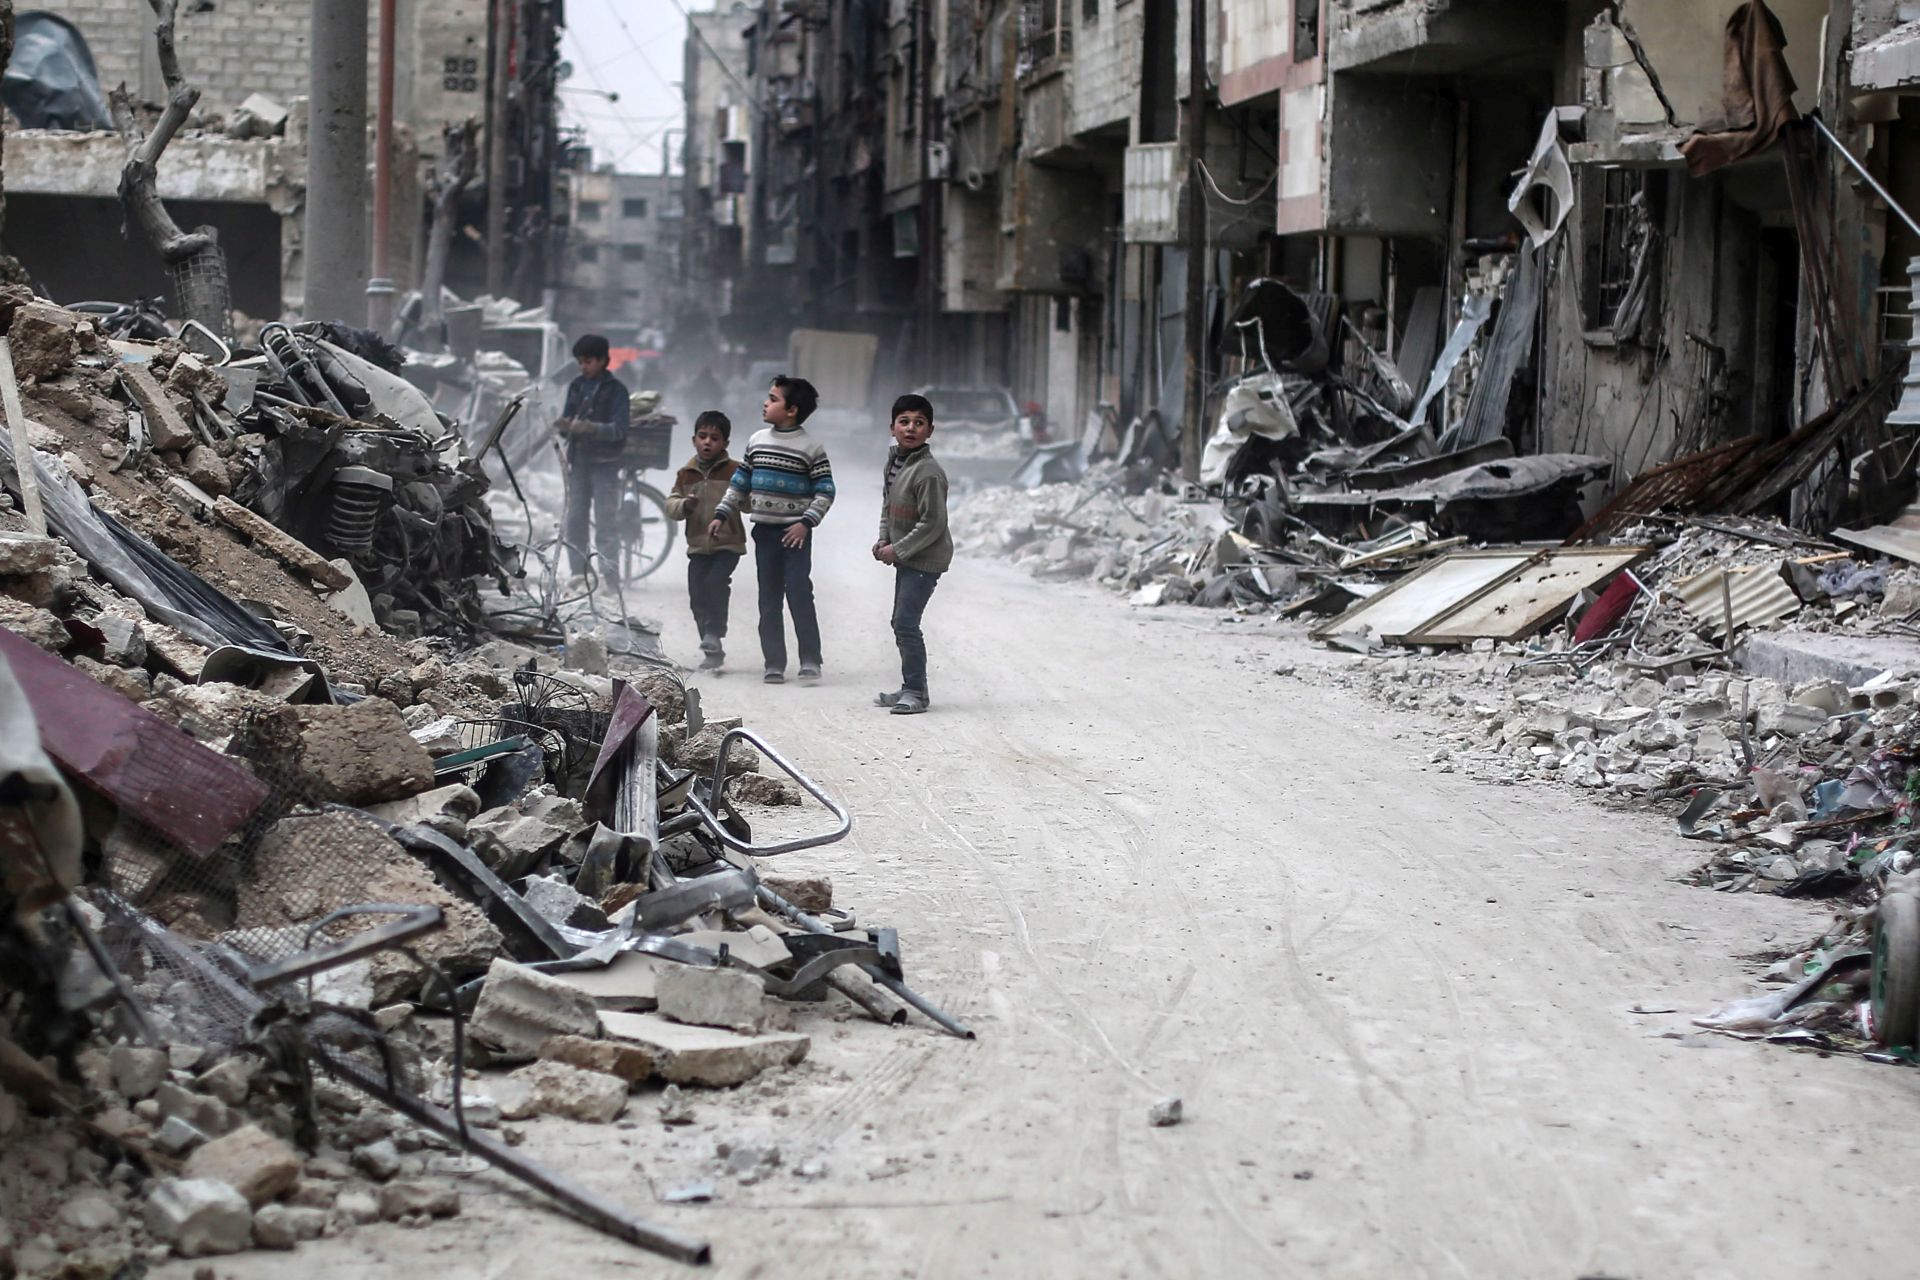 Klórgázt vetett be lakóövezetben a szír kormány három éve egy nemzetközi szervezet szerint